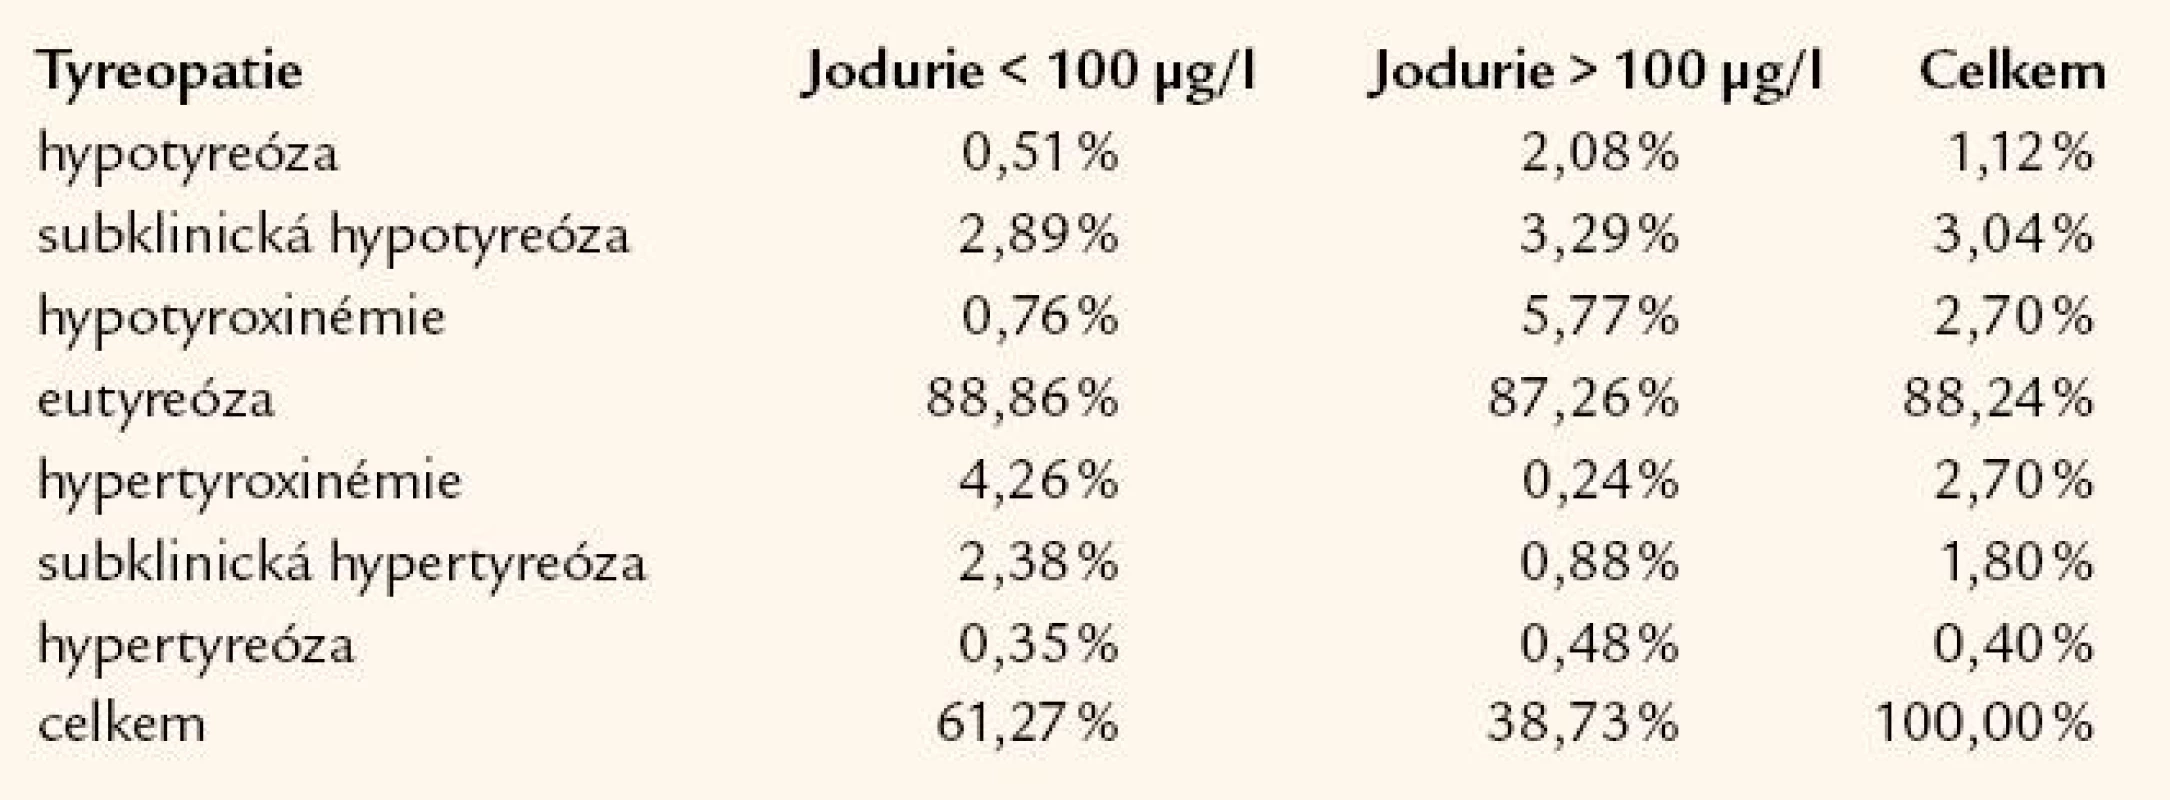 Frekvence výskytu tyreopatií u dospělých podle hladin jodurie (n = 3 222).